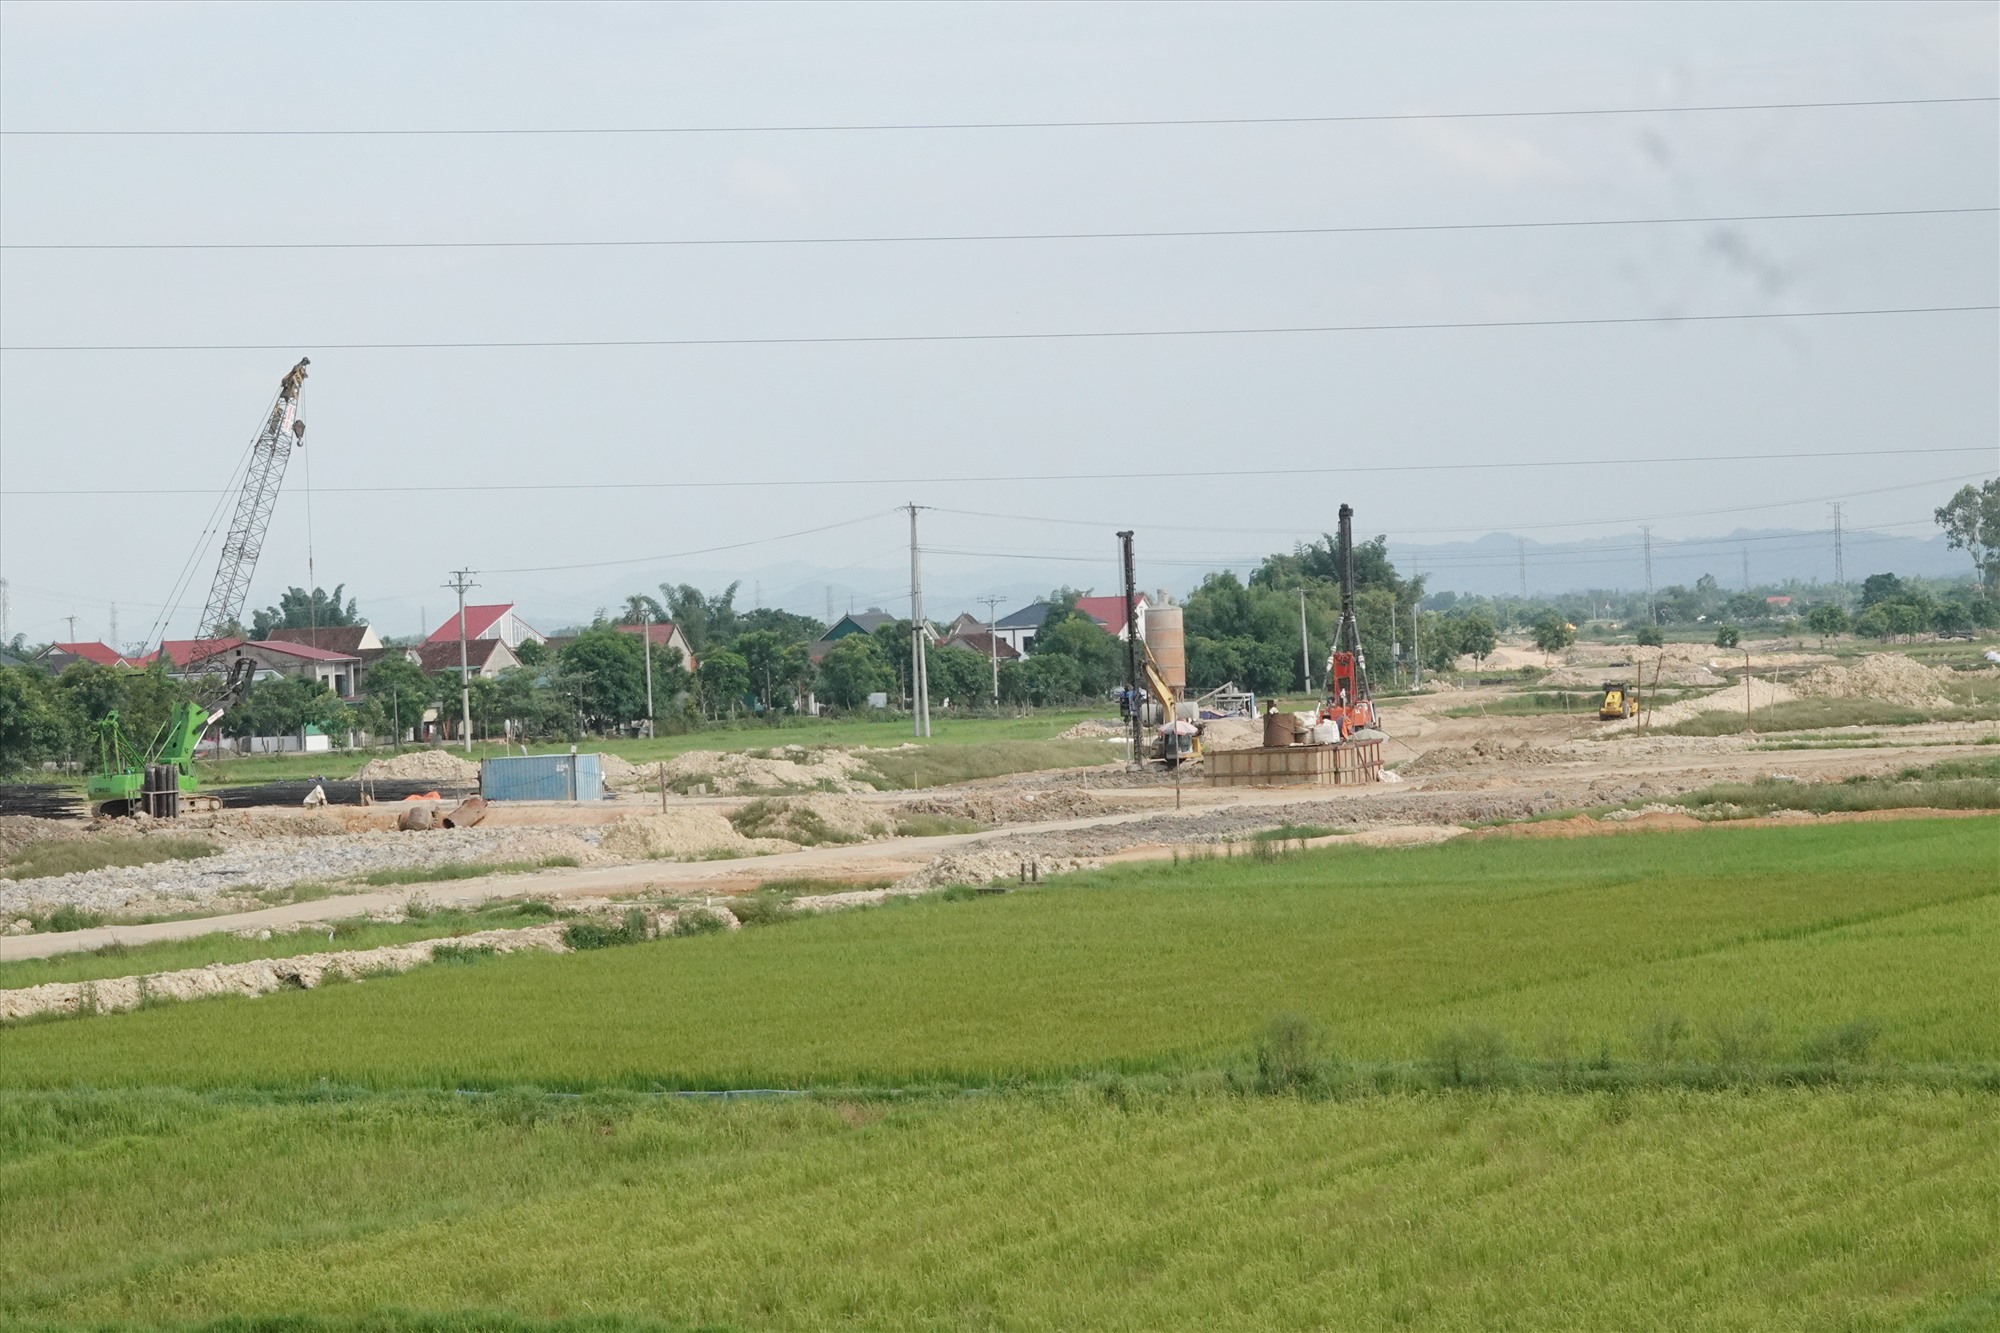 Phần đường cao tốc Bắc - Nam đoạn Bãi Vọt - Hàm Nghi cạnh cầu vượt trên quốc lộ 8 thuộc xã Thanh Bình Thịnh. Ảnh: Trần Tuấn.